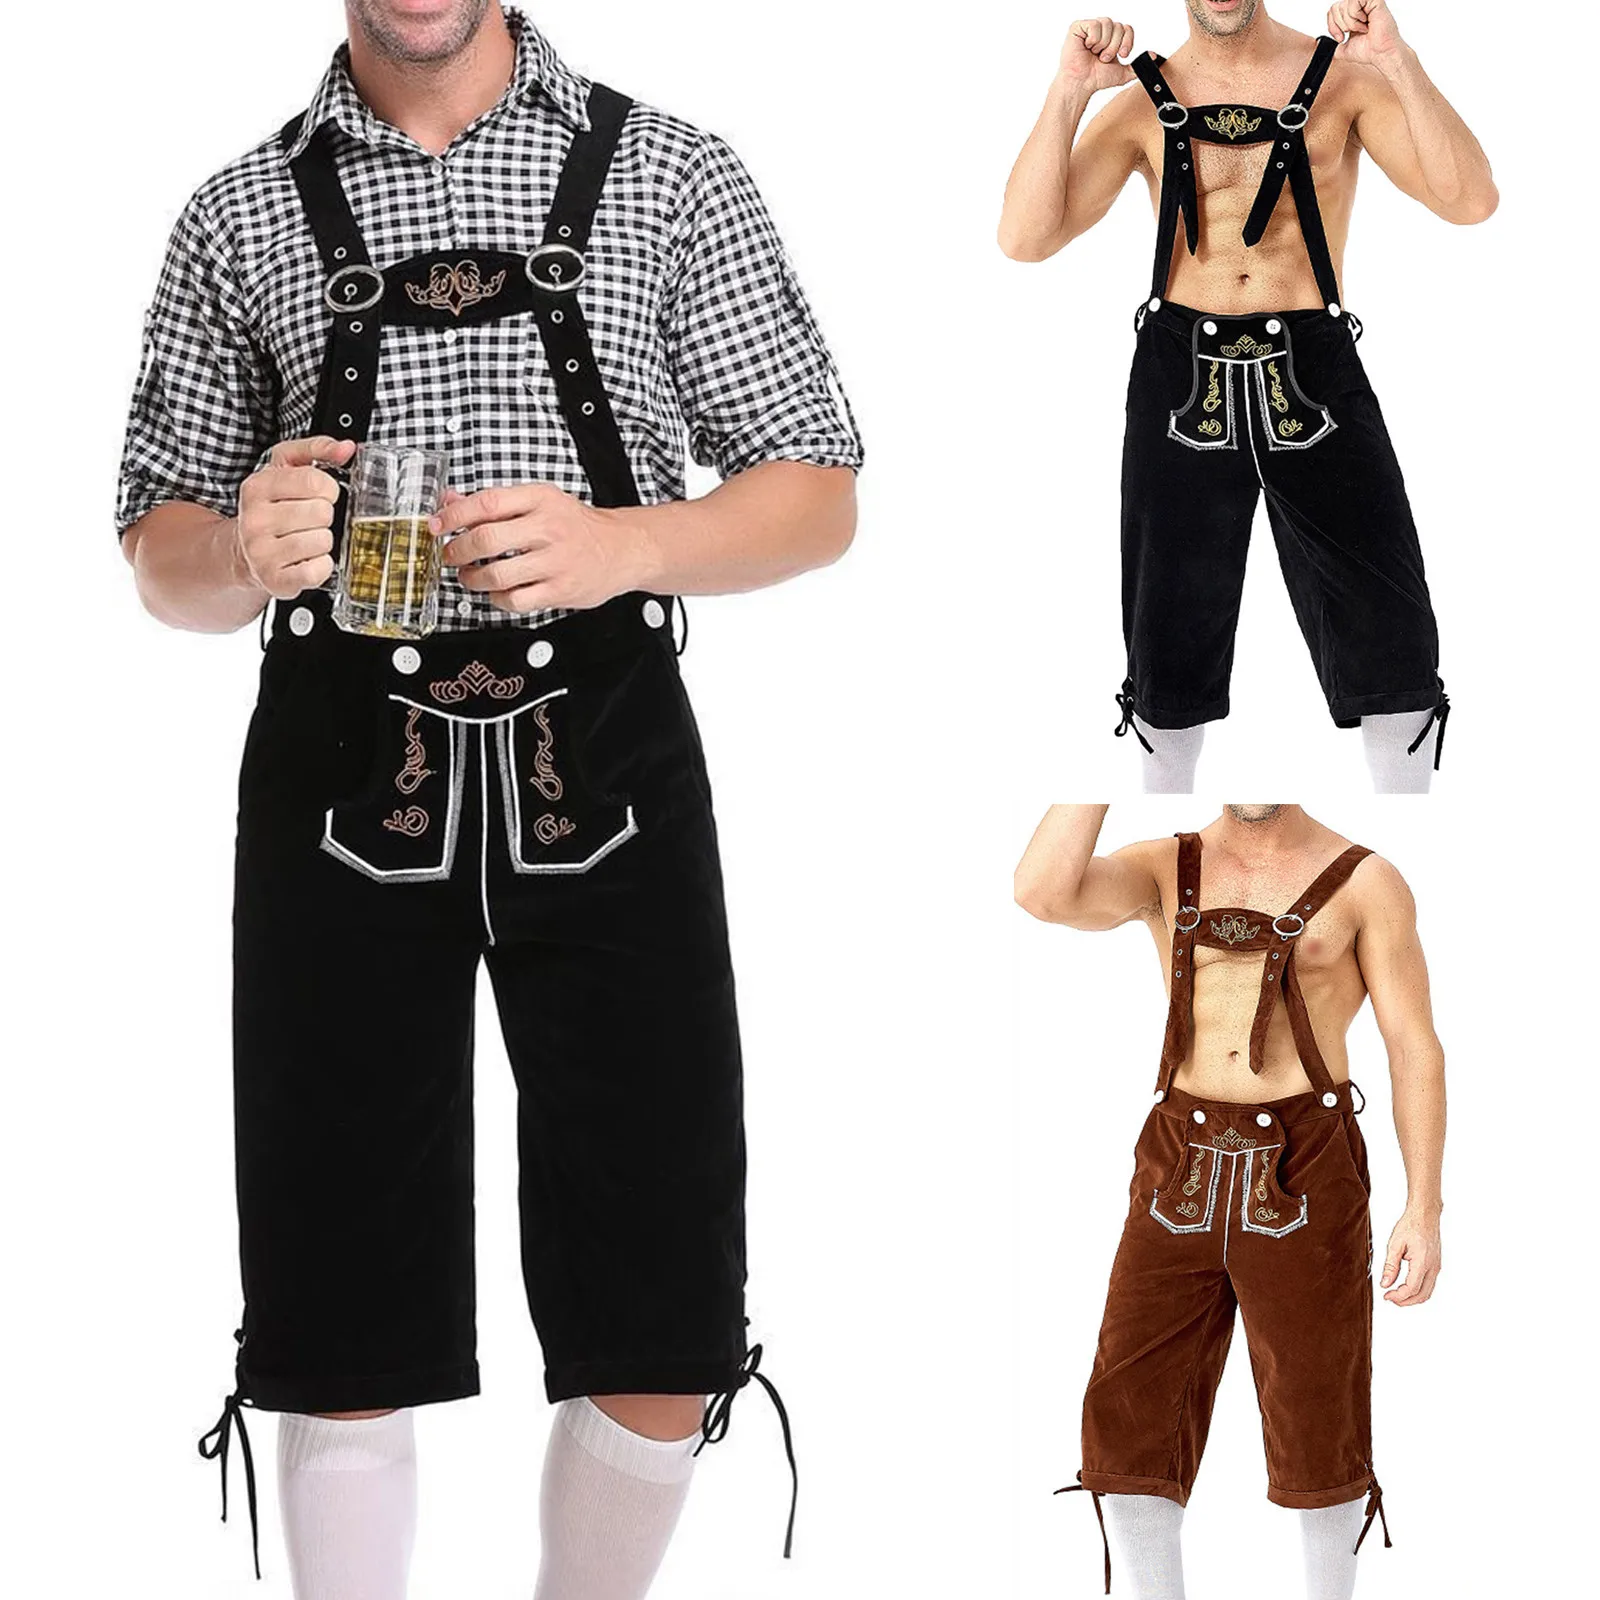 

Брюки для взрослых мужчин Немецкий Октоберфест традиционный баварский пиво мужские шорты Lederhosen костюм для косплея на Хэллоуин вечеринку